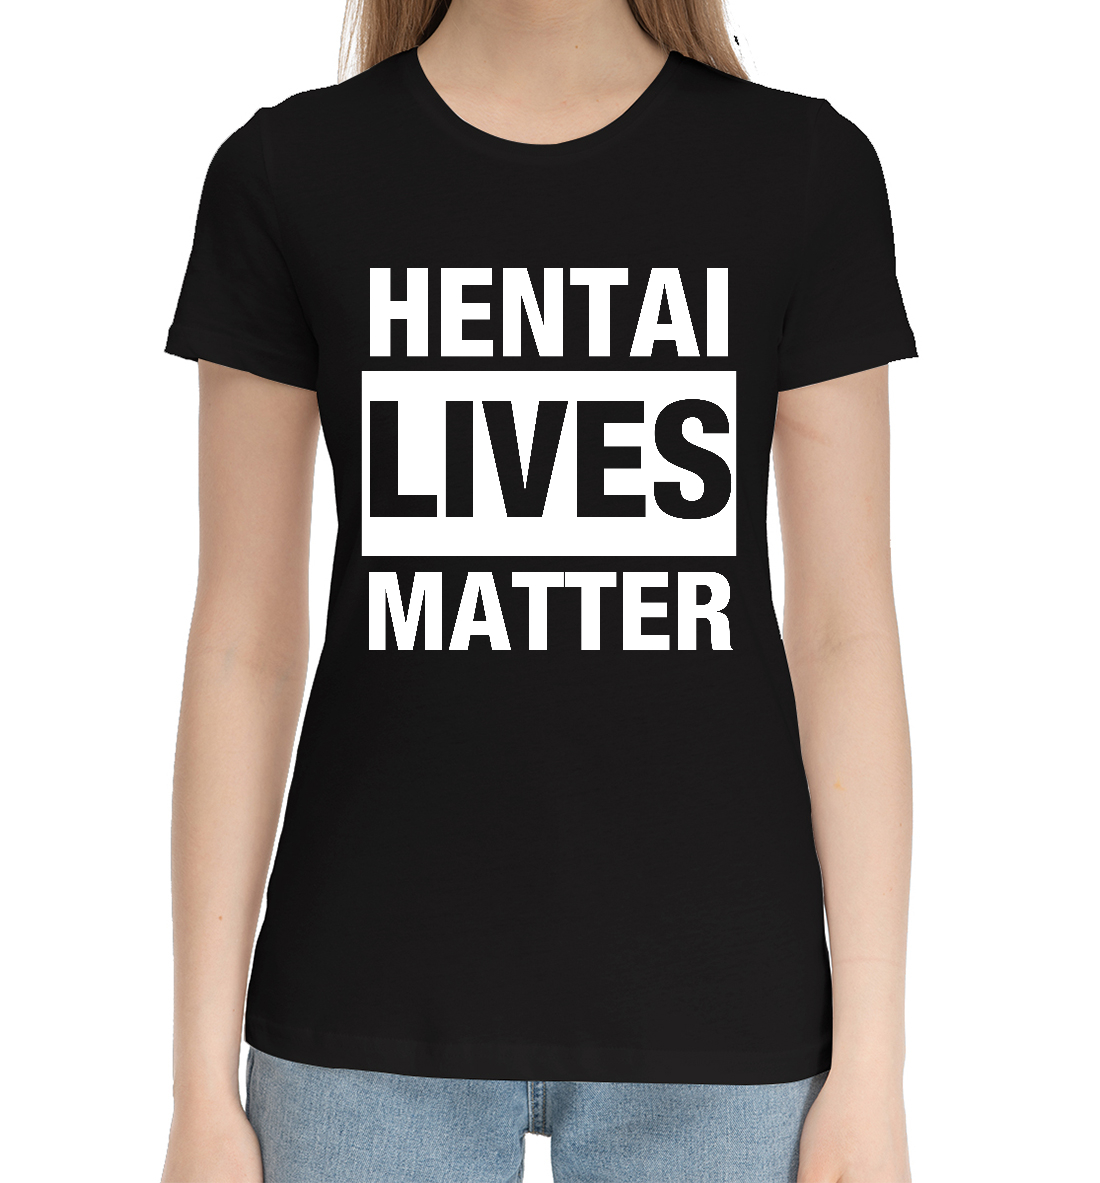 

Hentai lives matter